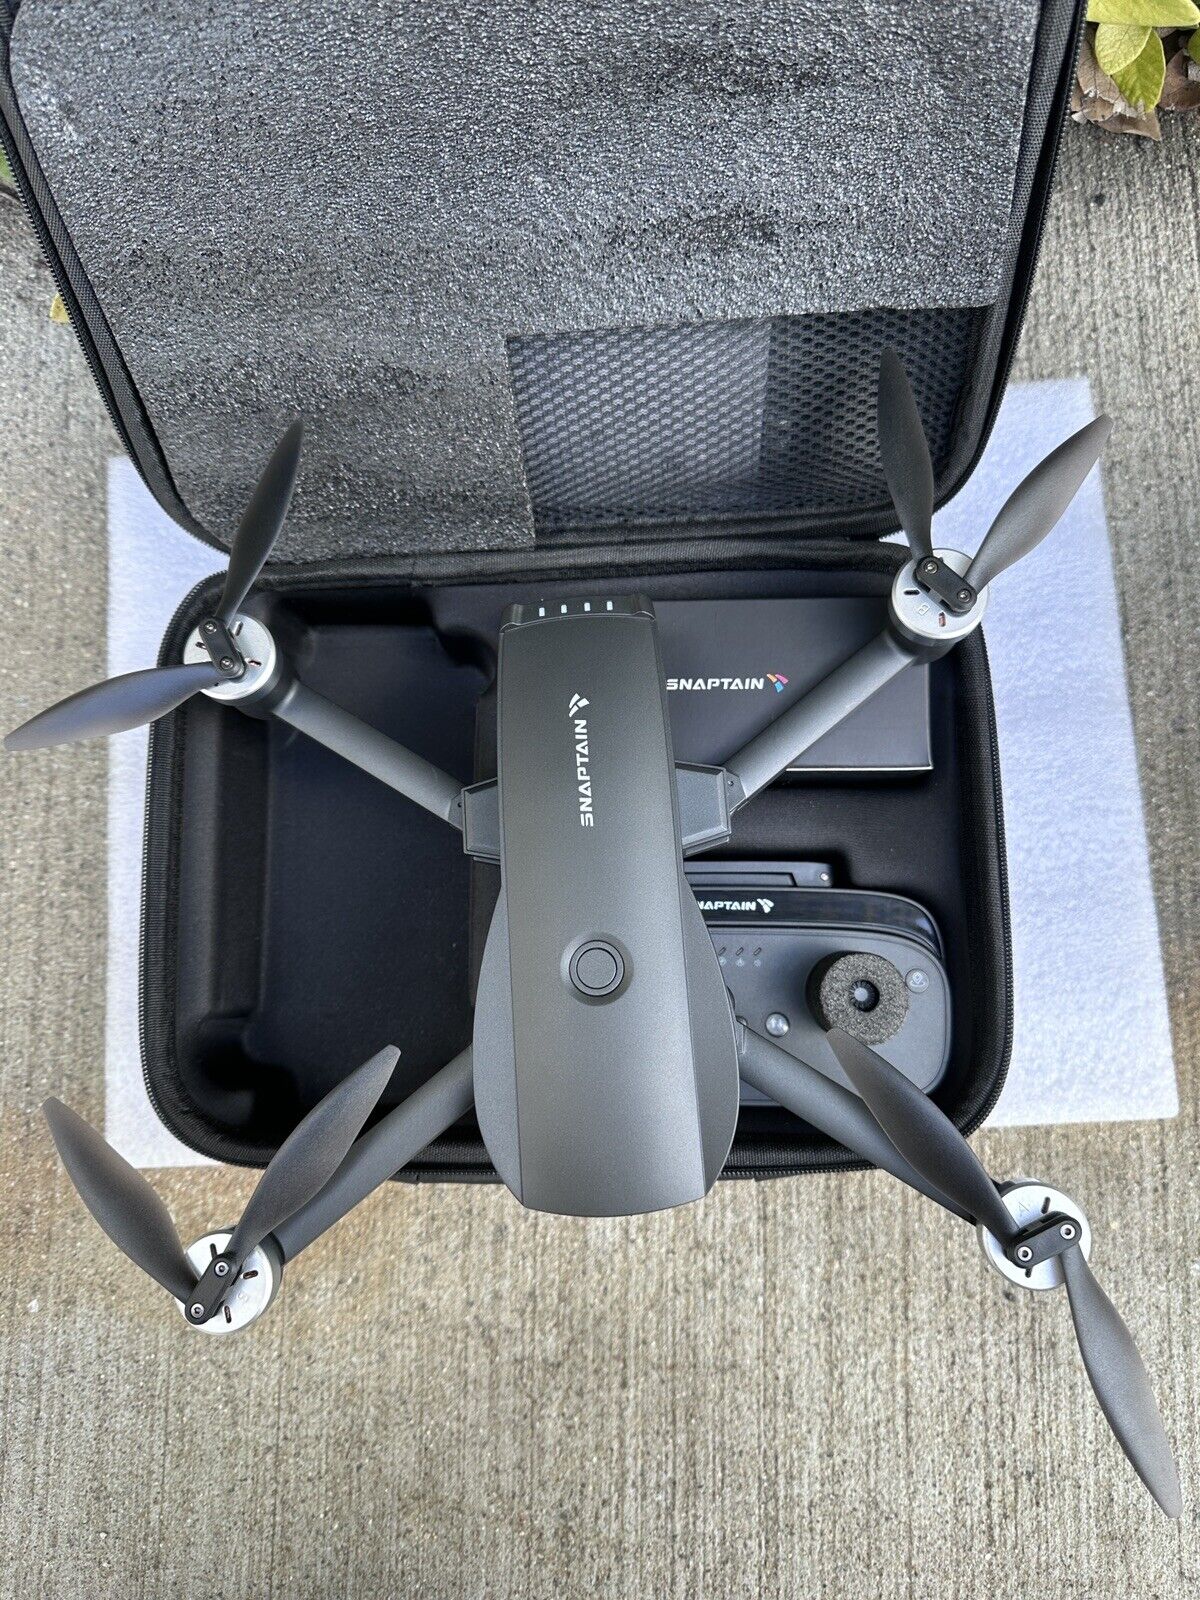 Snaptain SP7100 Dual Camera FPV Quadcopter